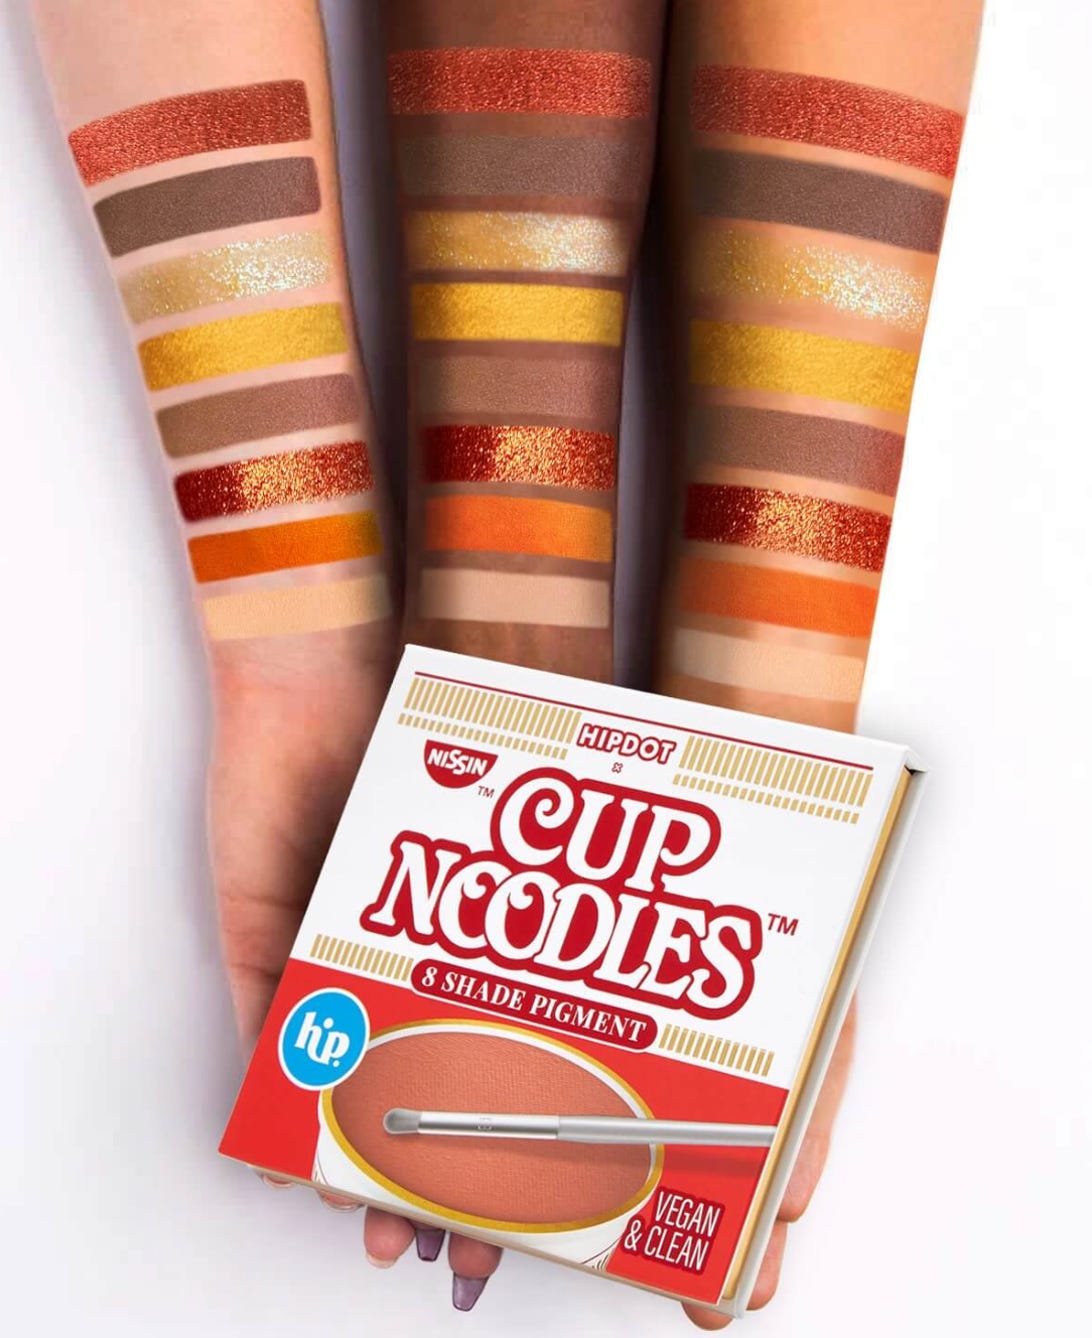 Cup Noodles makeup